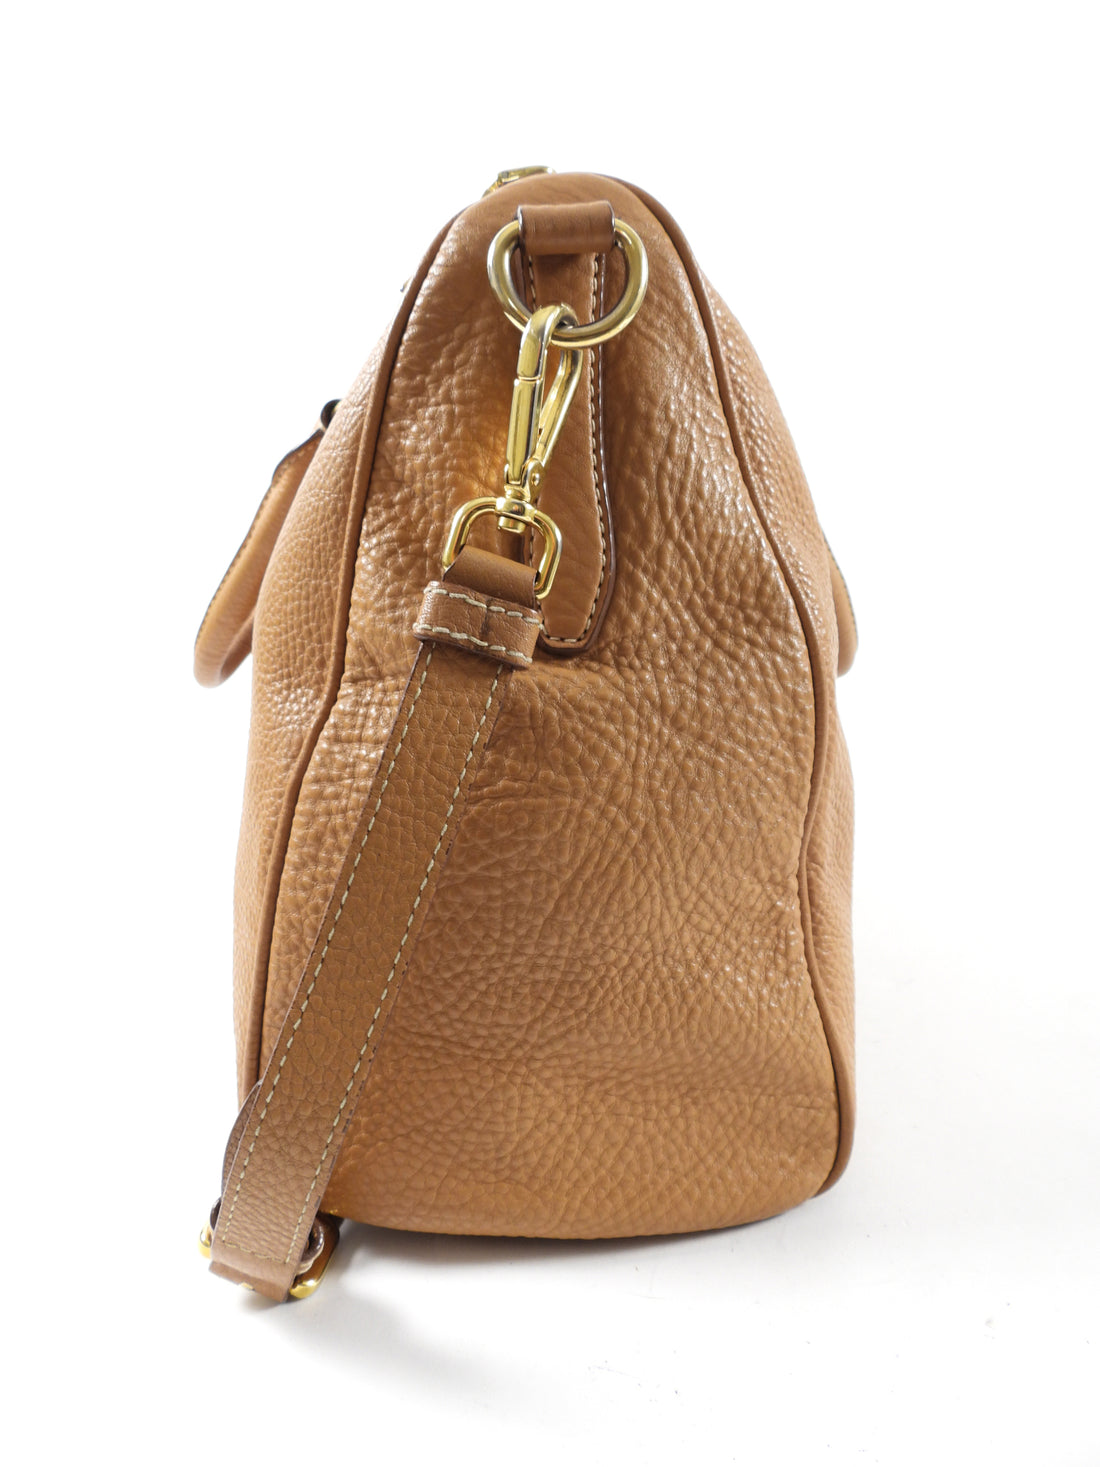 Prada Tan Vitello Daino Leather Large Two-Way Bag